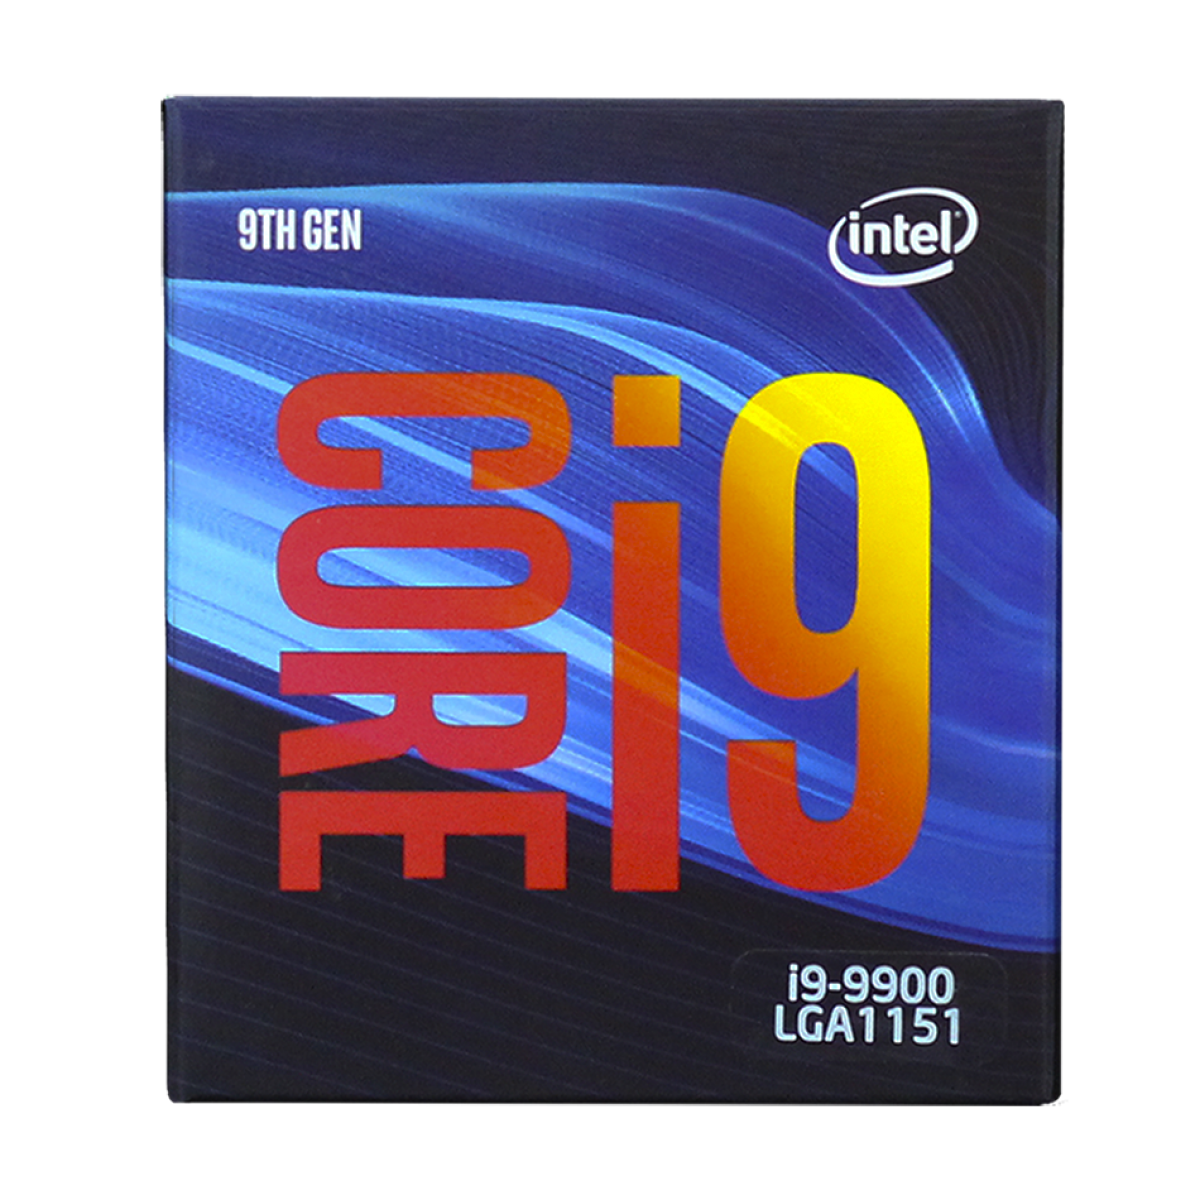 Processador Intel Core i9 9900 3.10GHz (5.0GHz Turbo), 9ª Geração, 8-Core 16-Thread, LGA 1151, BX80684I99900 - Open Box